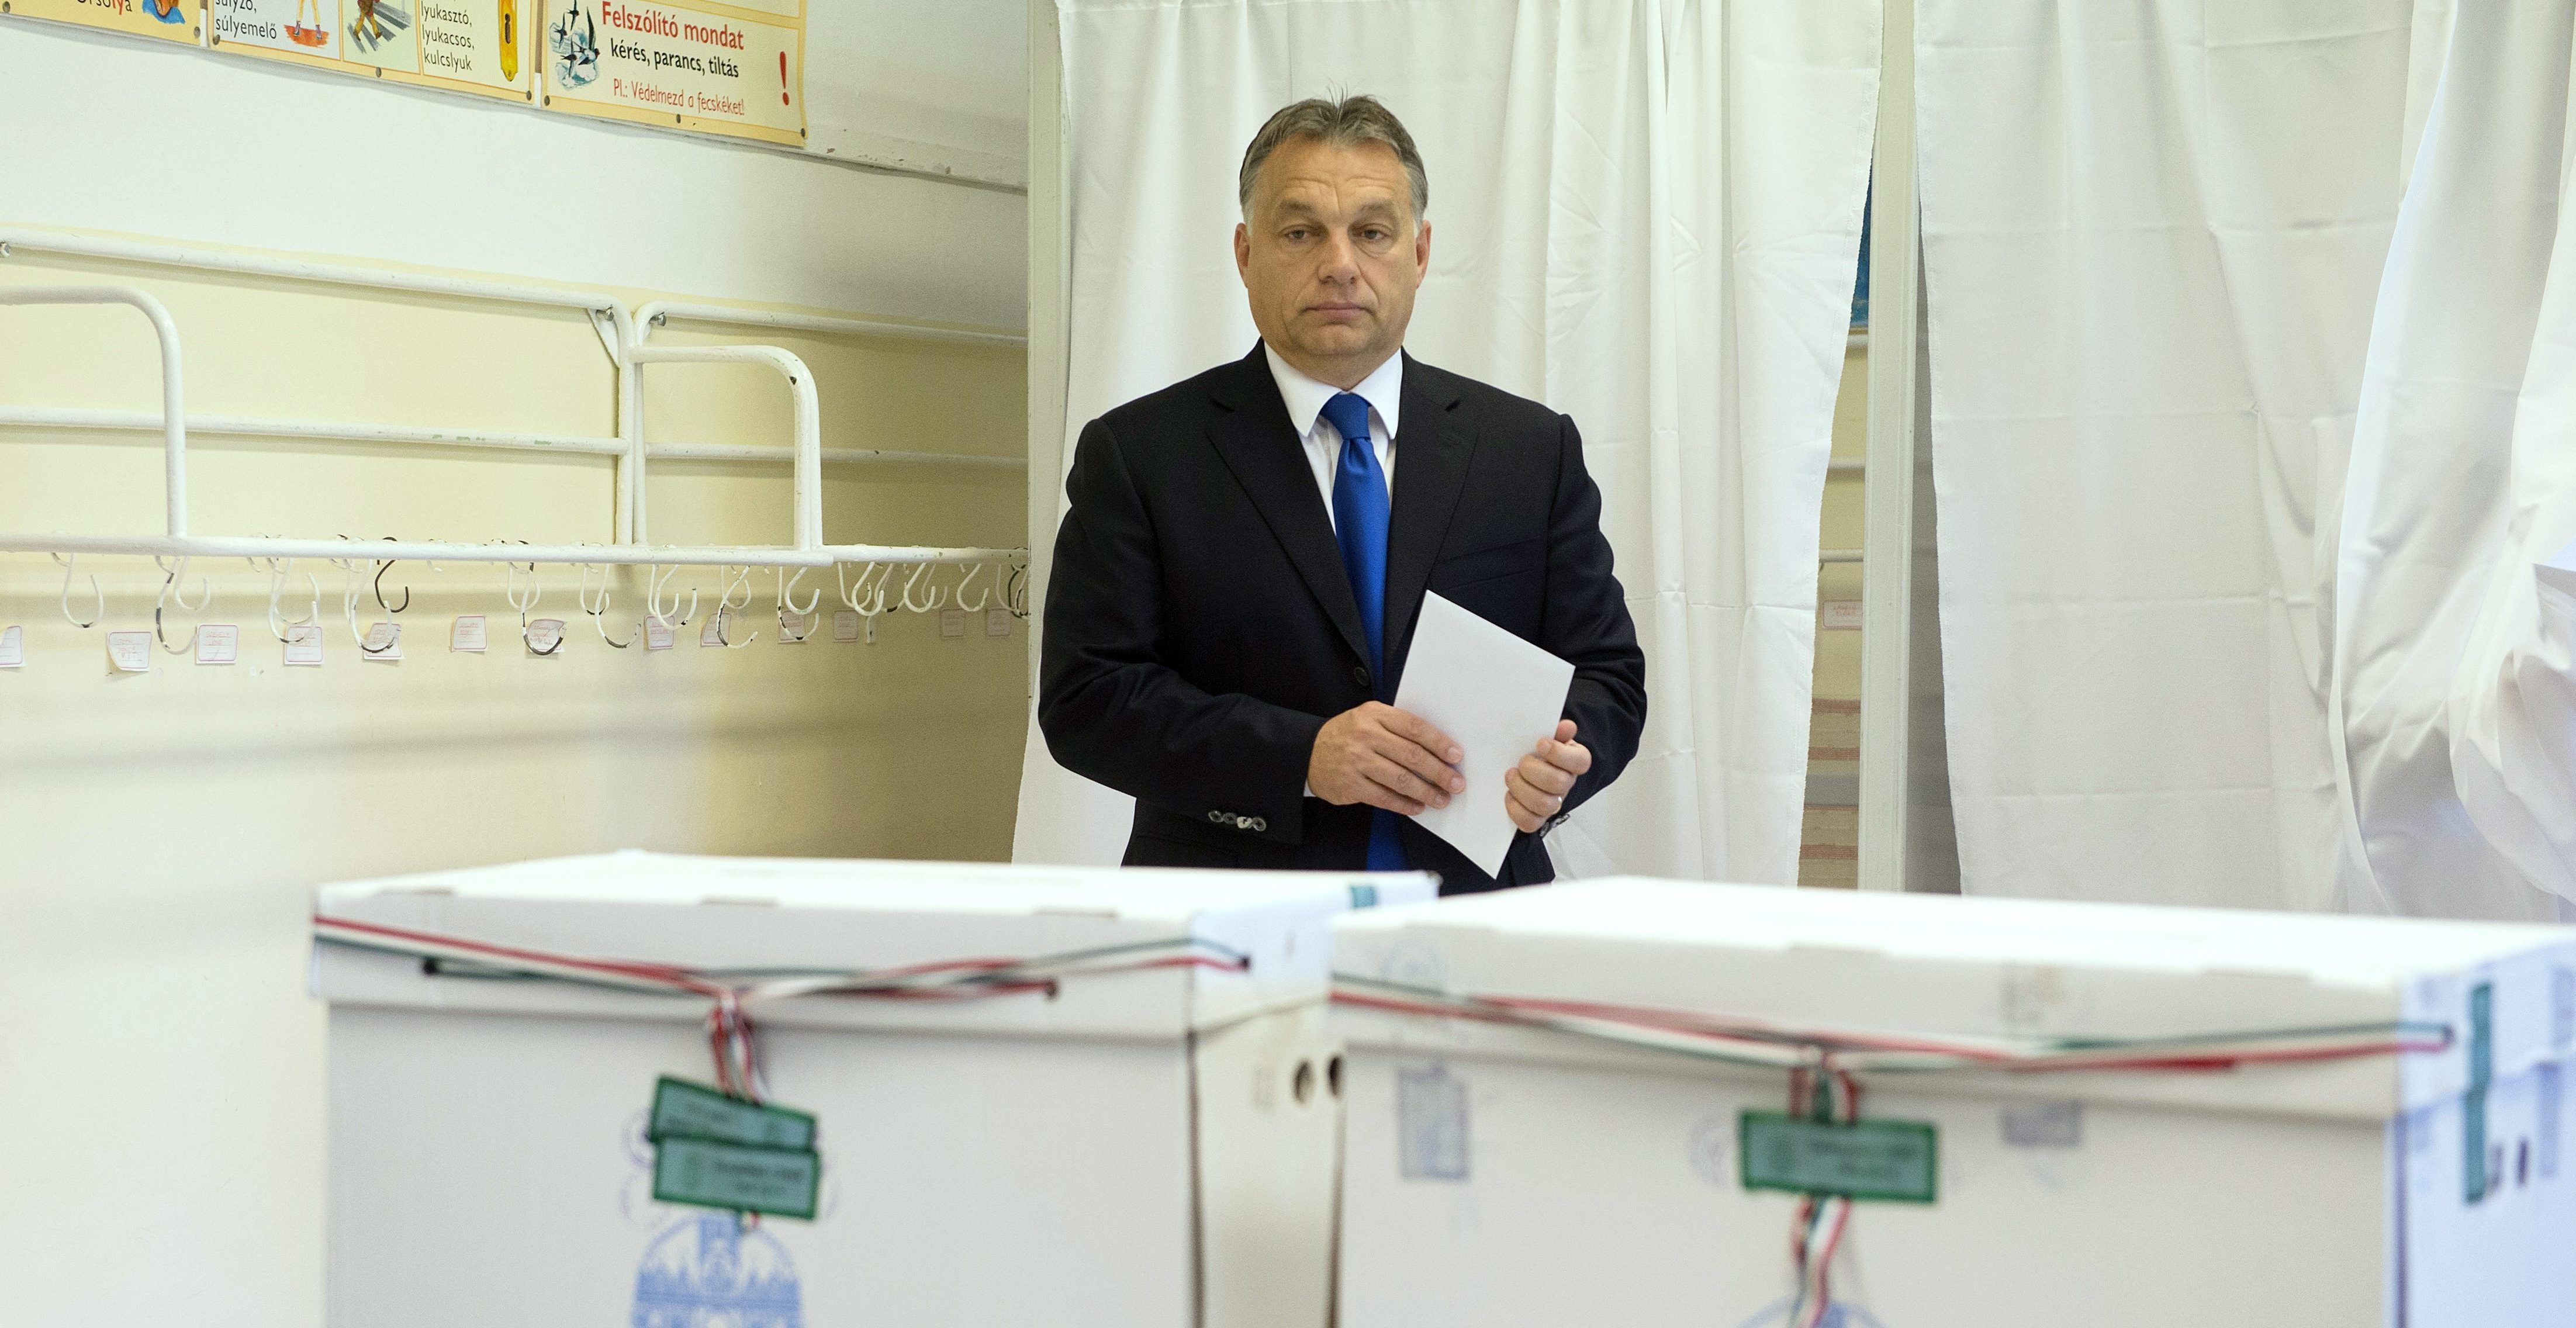 Veszprémben is összefog az ellenzék az önkormányzati választáson